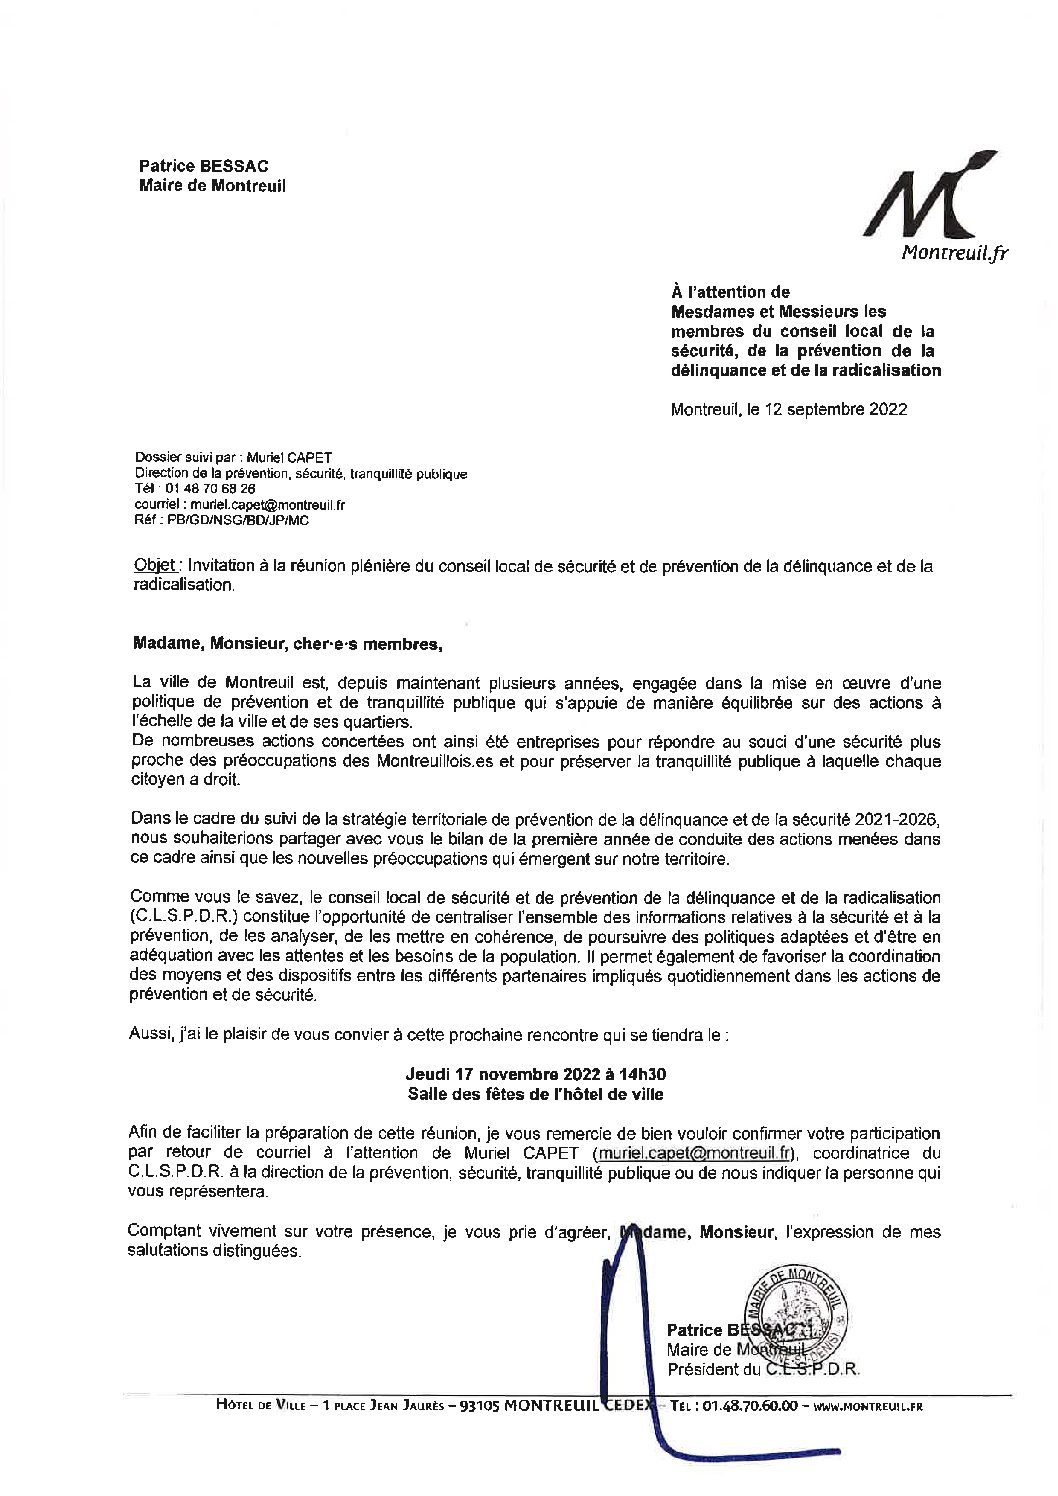 17 novembre 2022 : Conseil local de prévention de la délinquance et de la radicalisation à Montreuil